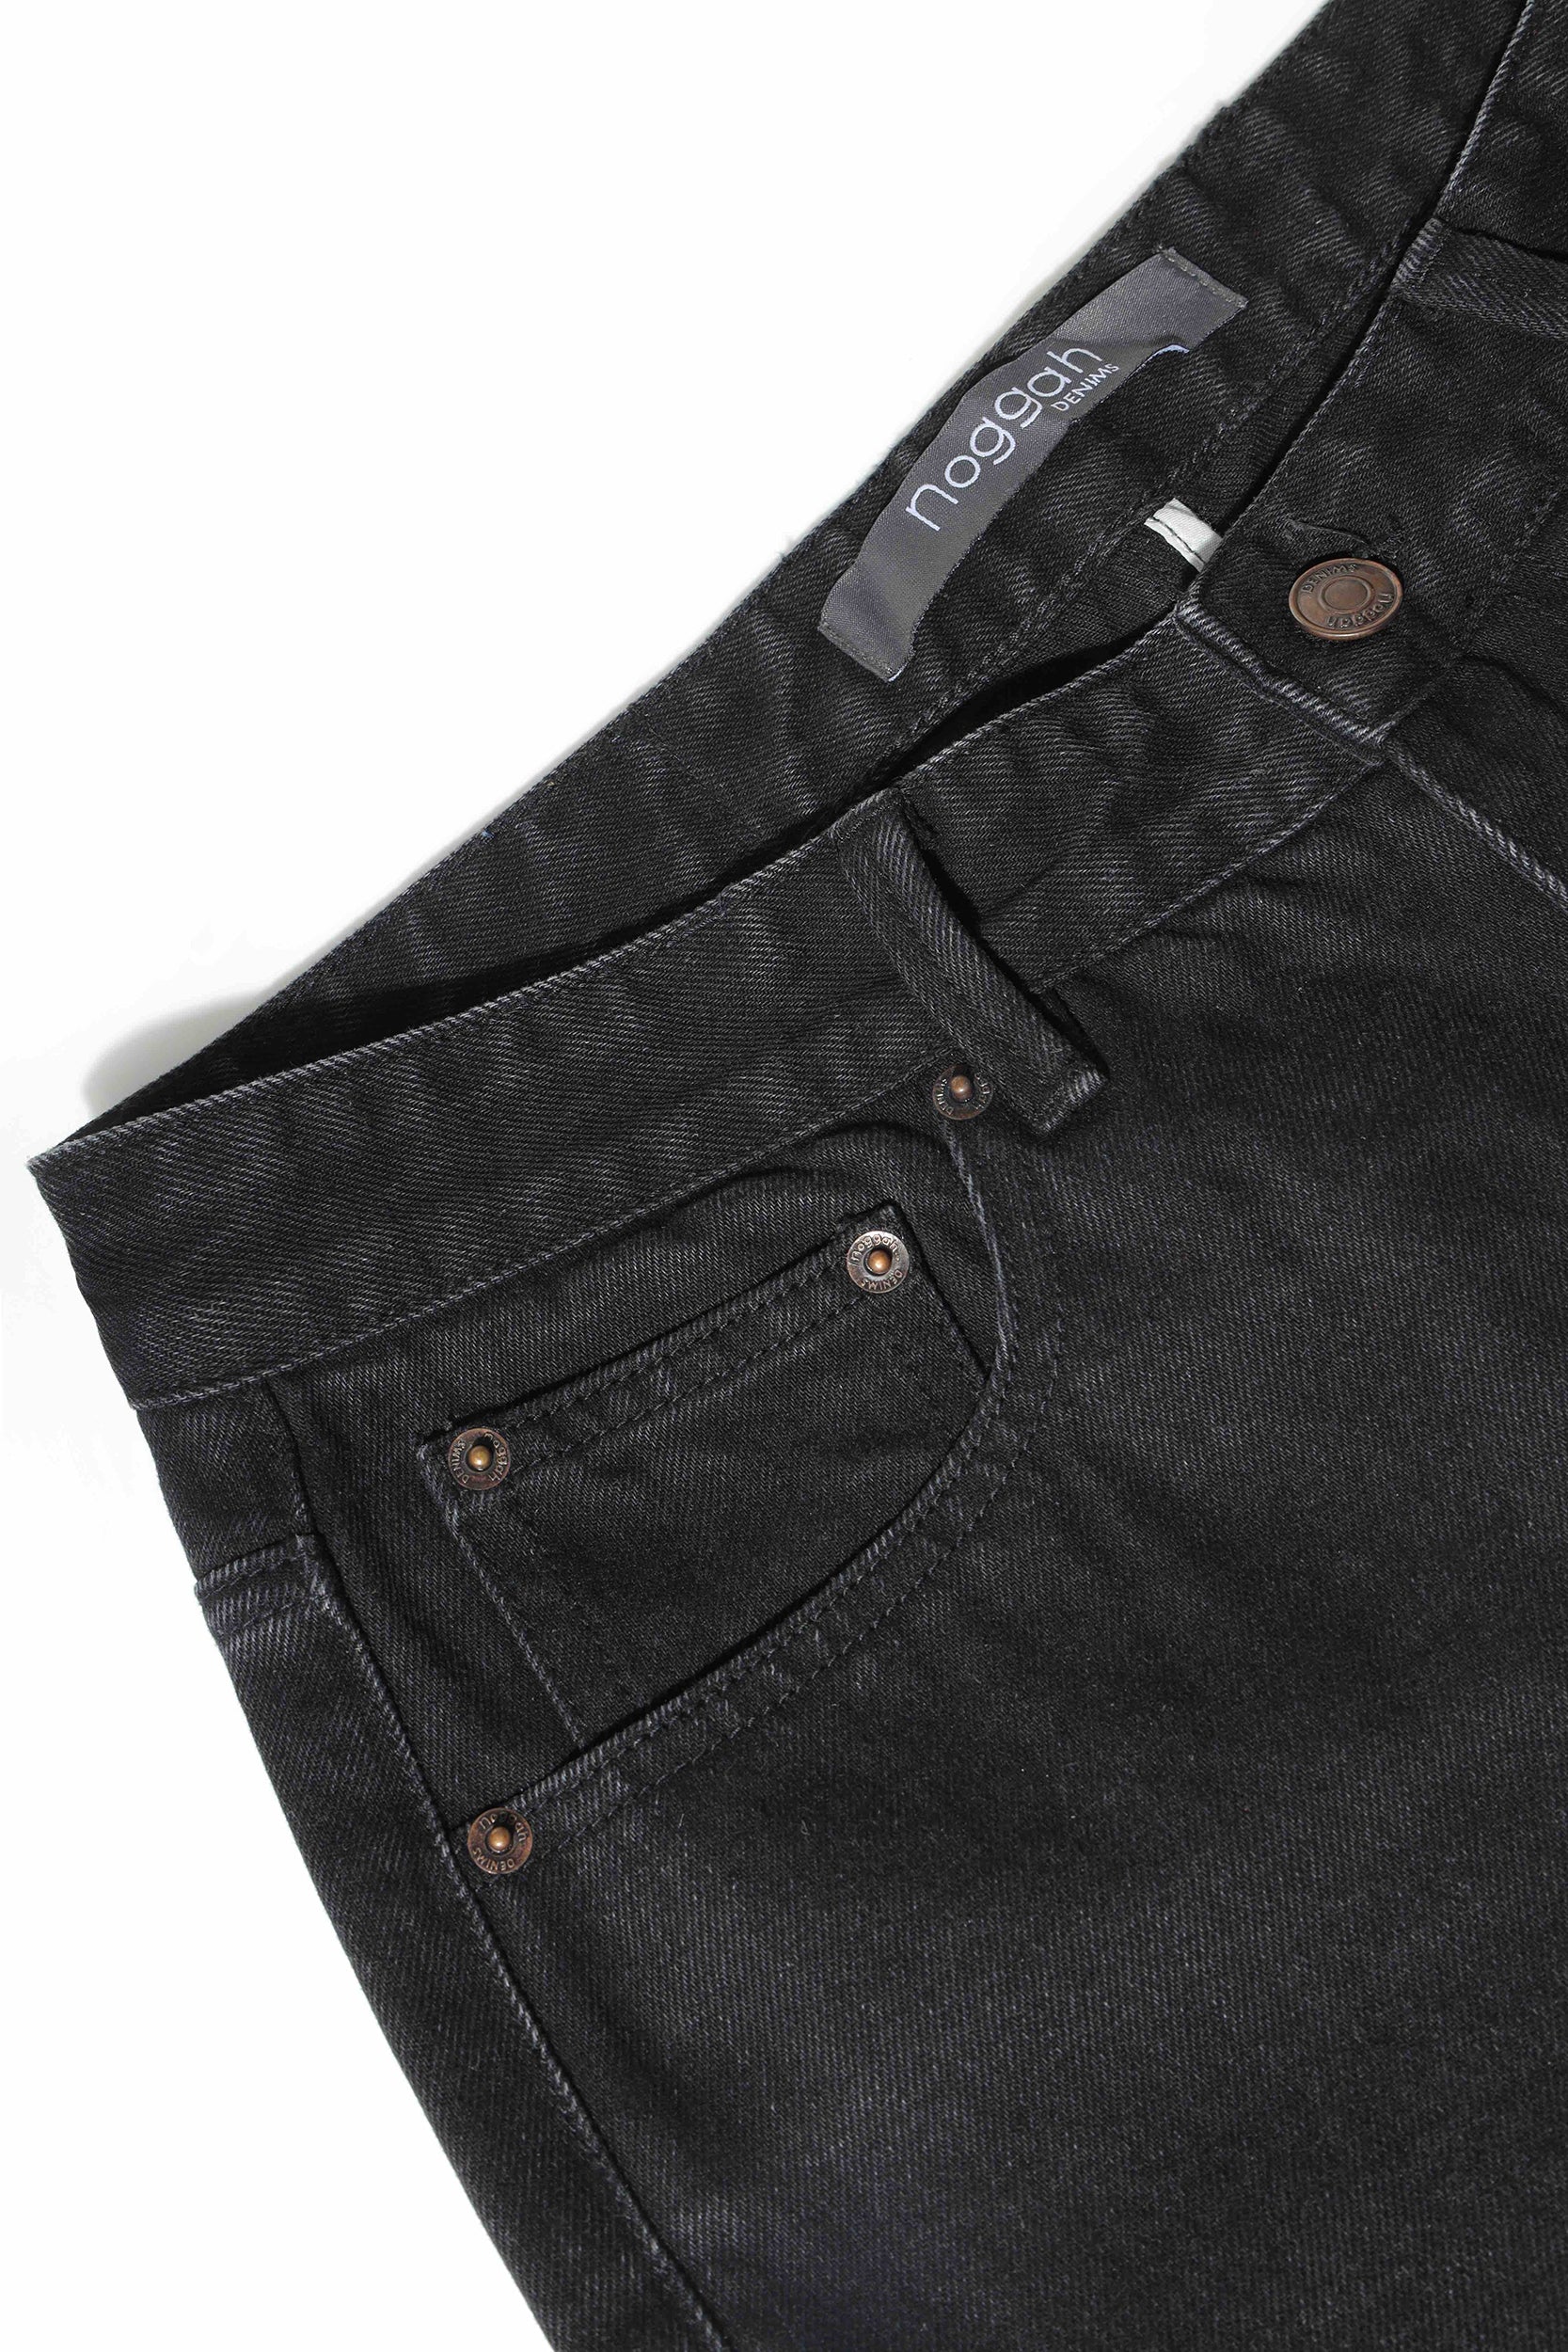 Levis 511™ Slim Fit Men's Jeans Brown